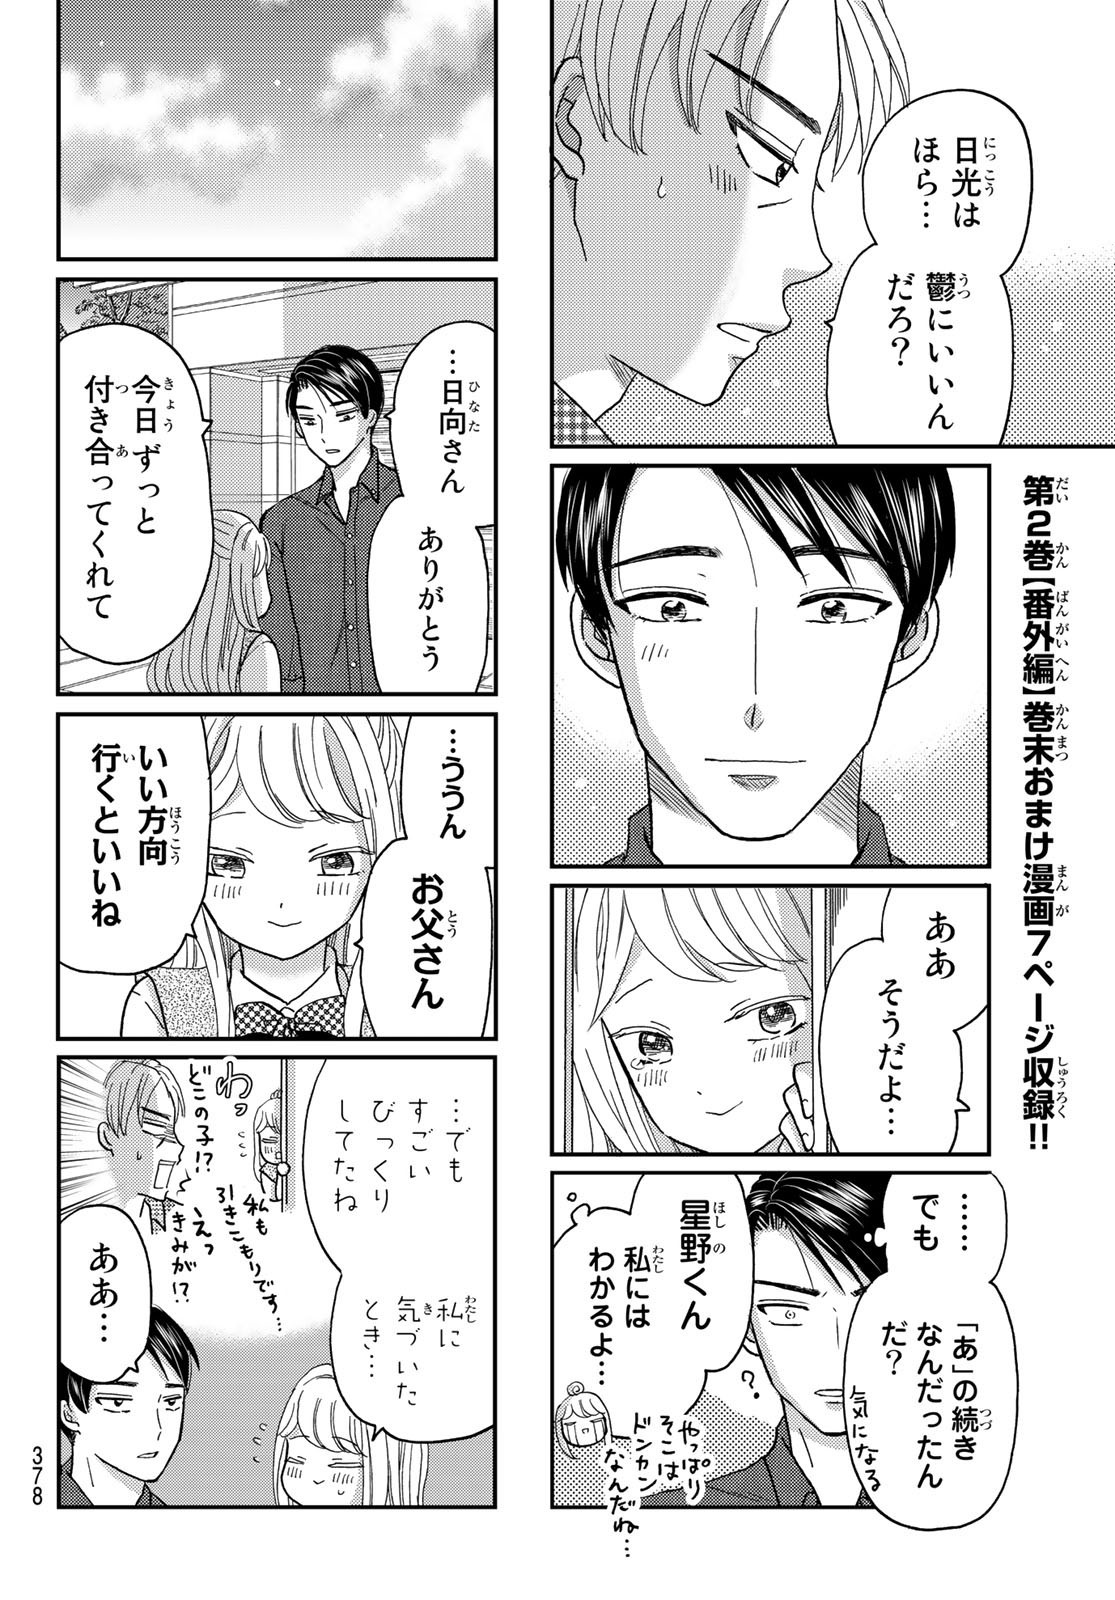 Hinata-san, Hoshino desu. - Chapter 031 - Page 8